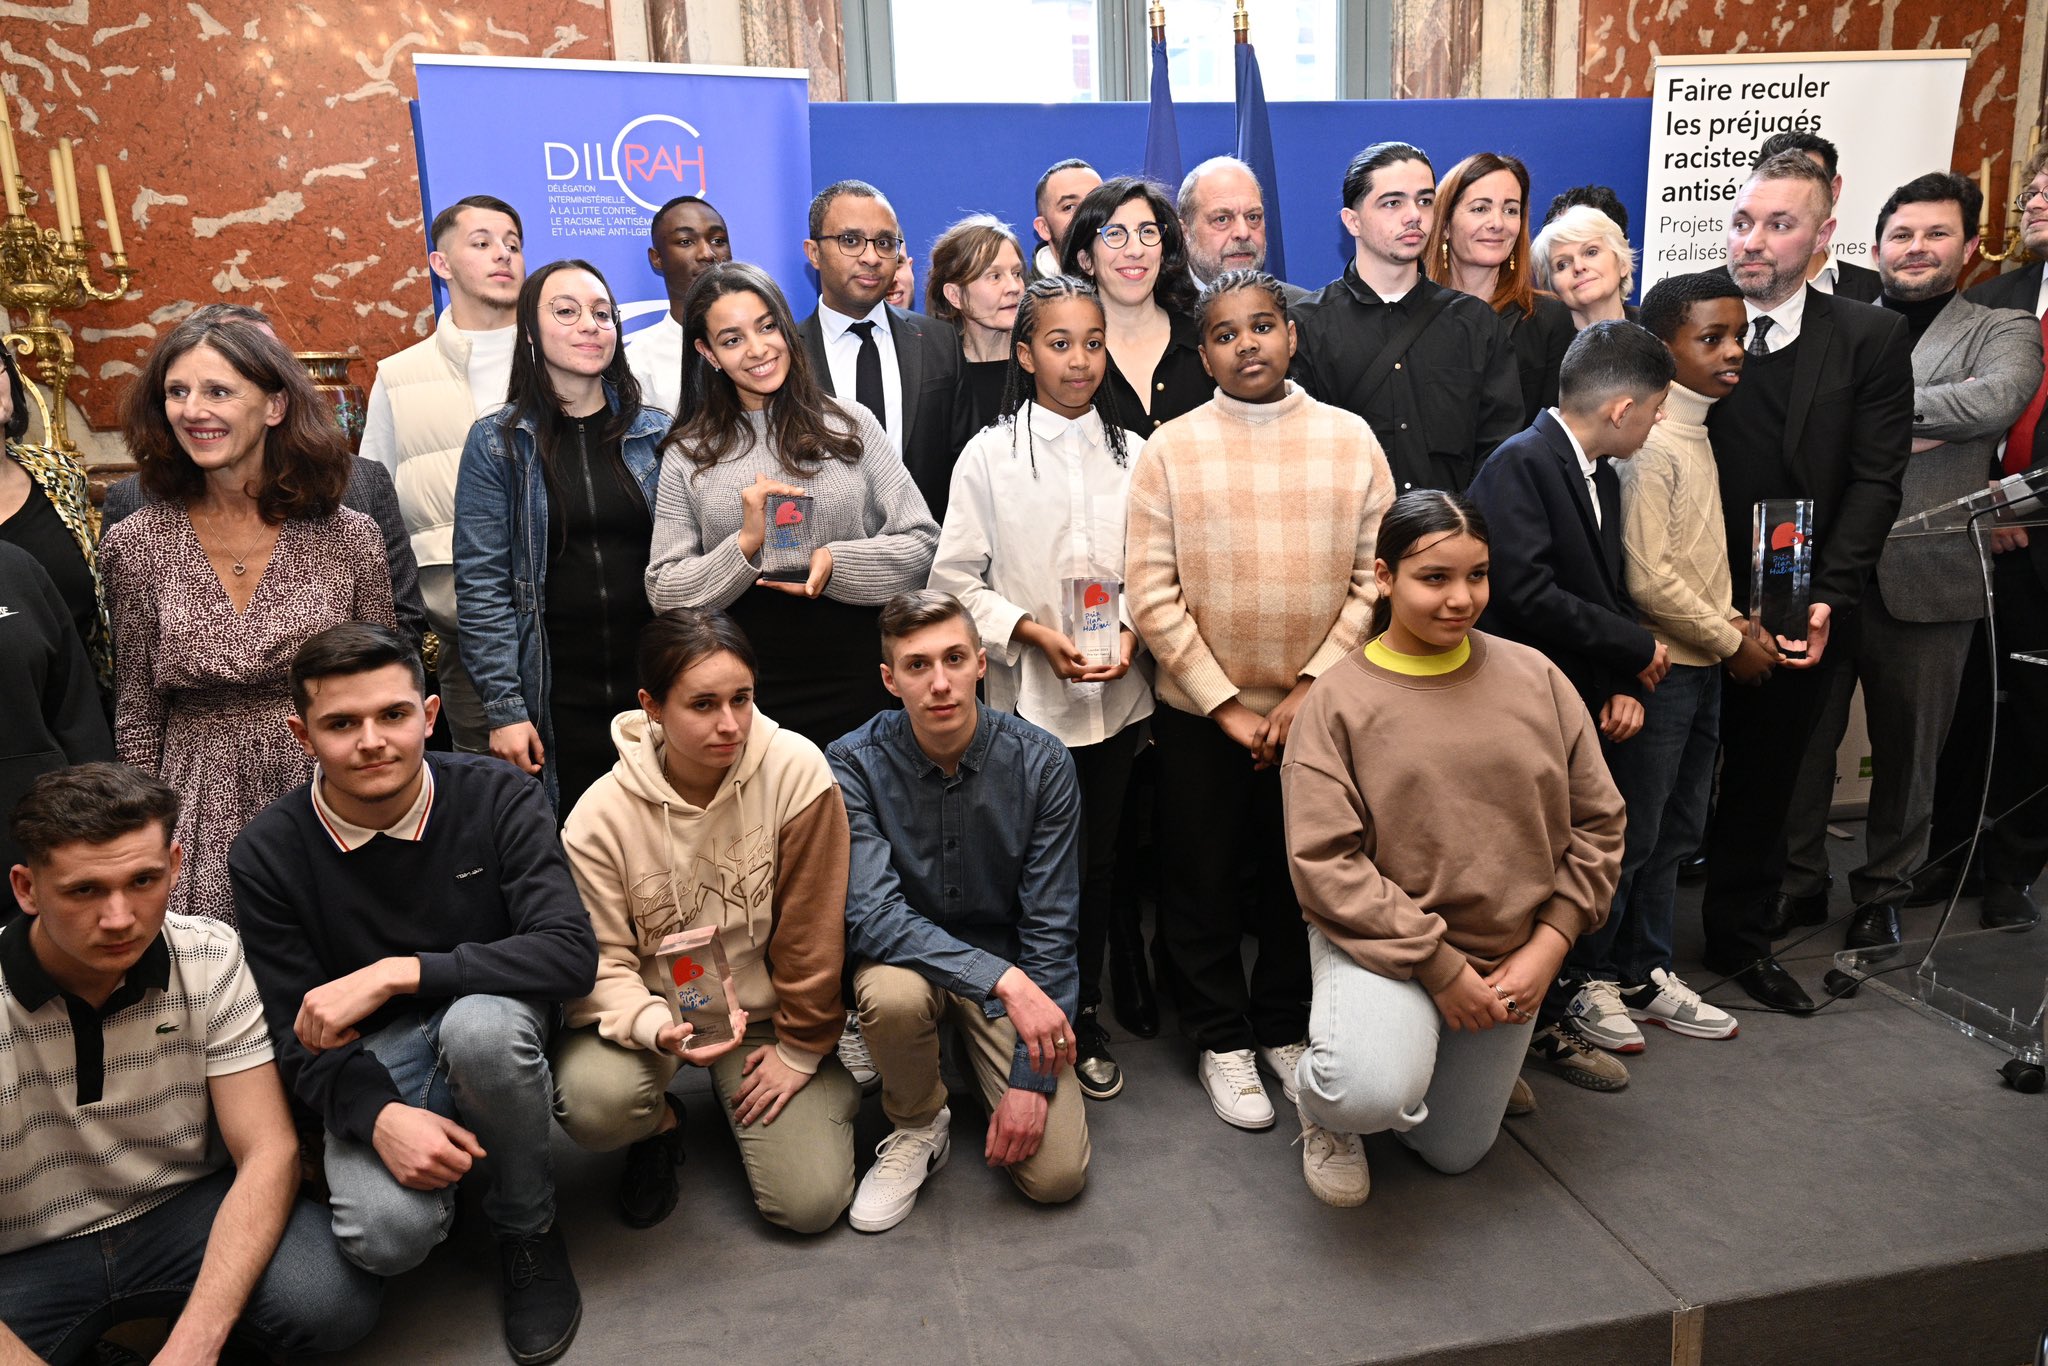 Prix Ilan Halimi: des jeunes mobilisés contre les préjugés racistes et antisémites